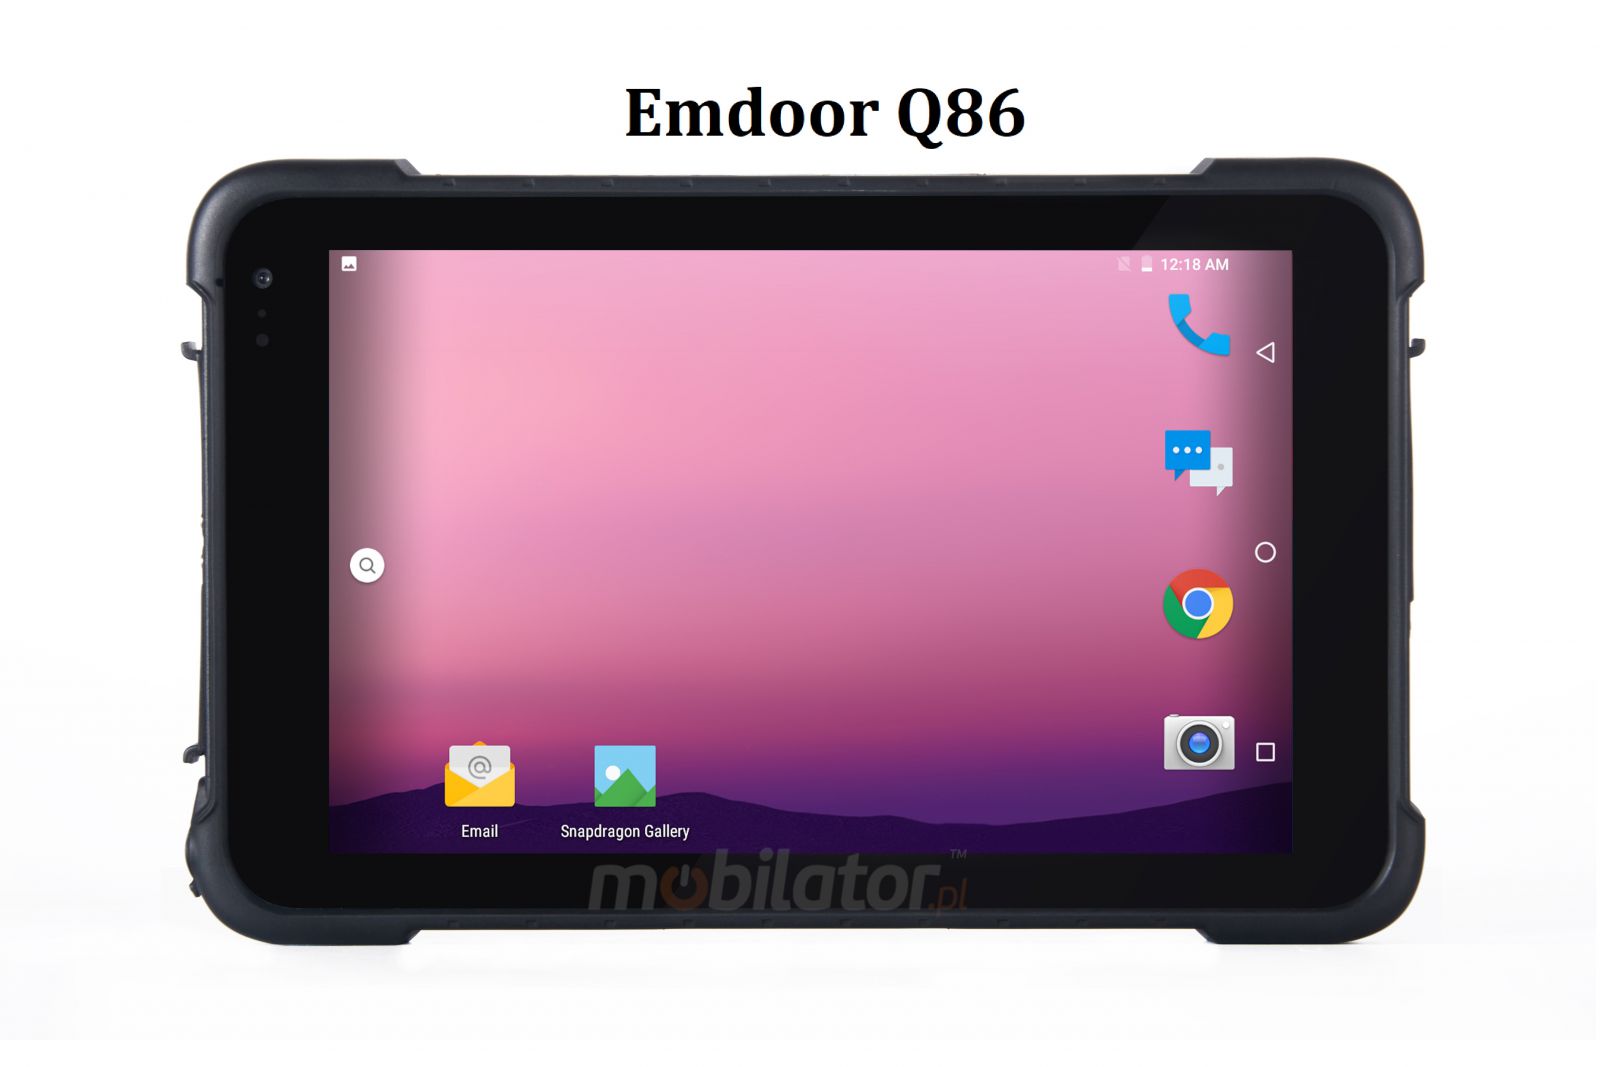 Wytrzymay tablet z omiordzeniowym procesorem, 4GB RAM pamici, dyskiem 64GB, NFC, ekran 800nits - Emdoor Q86 v.2